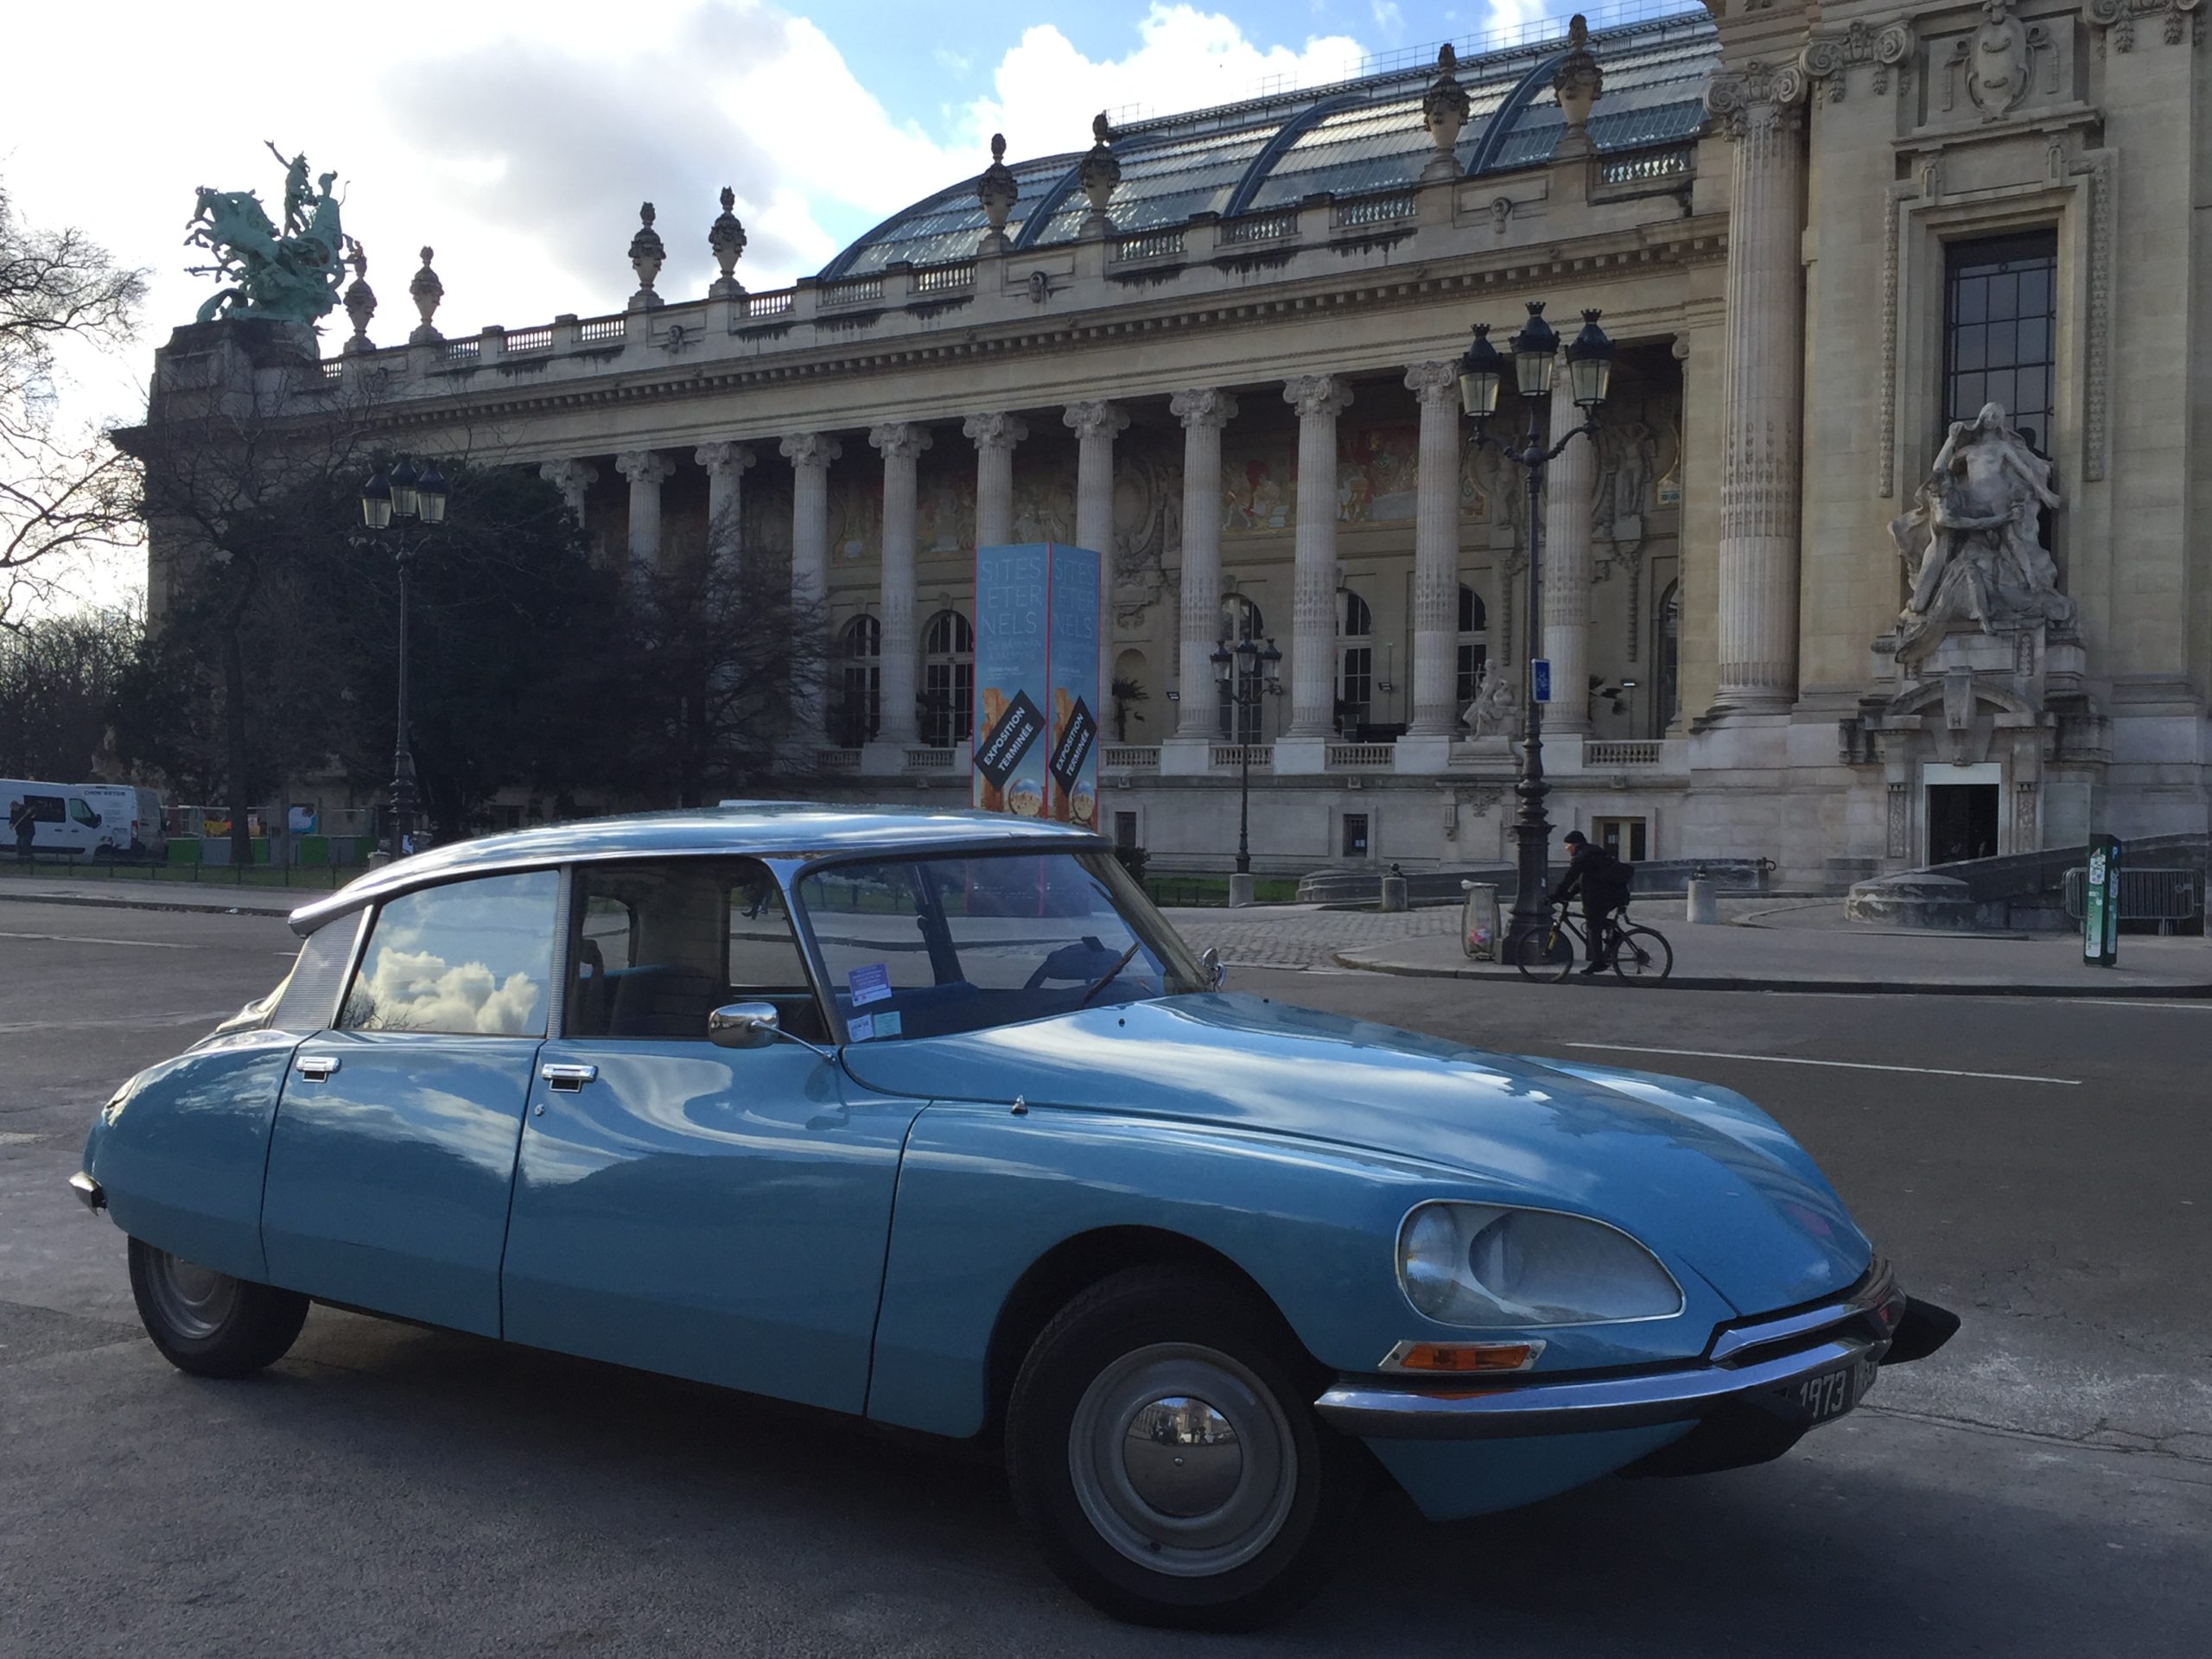 balade en voiture ancienne dans paris